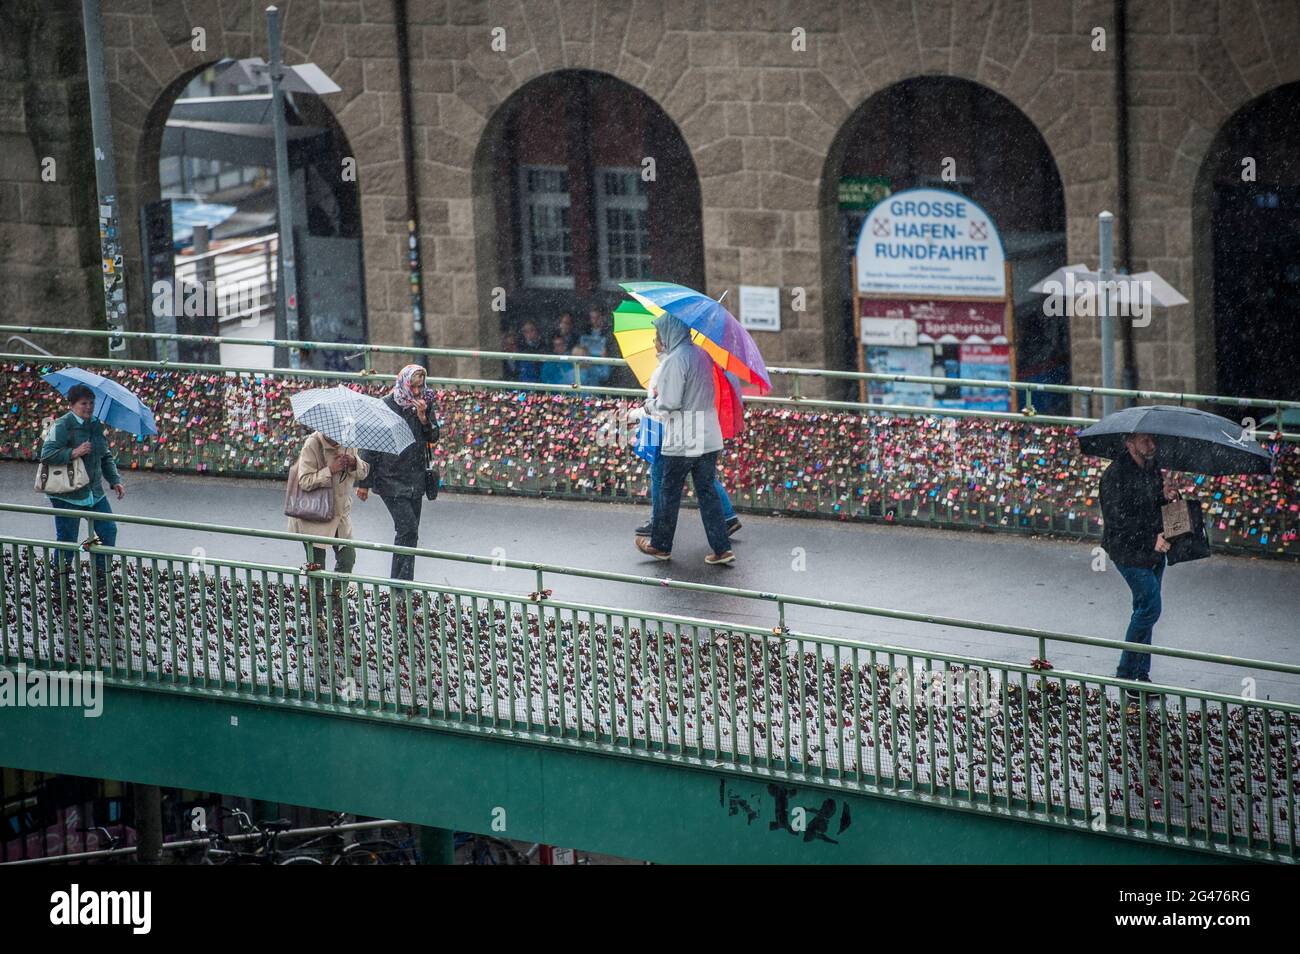 Regen in Hamburg. Fußgängerbrücke mit Passanten und Regenschirmen an den Landungsbrücken. Stock Photo